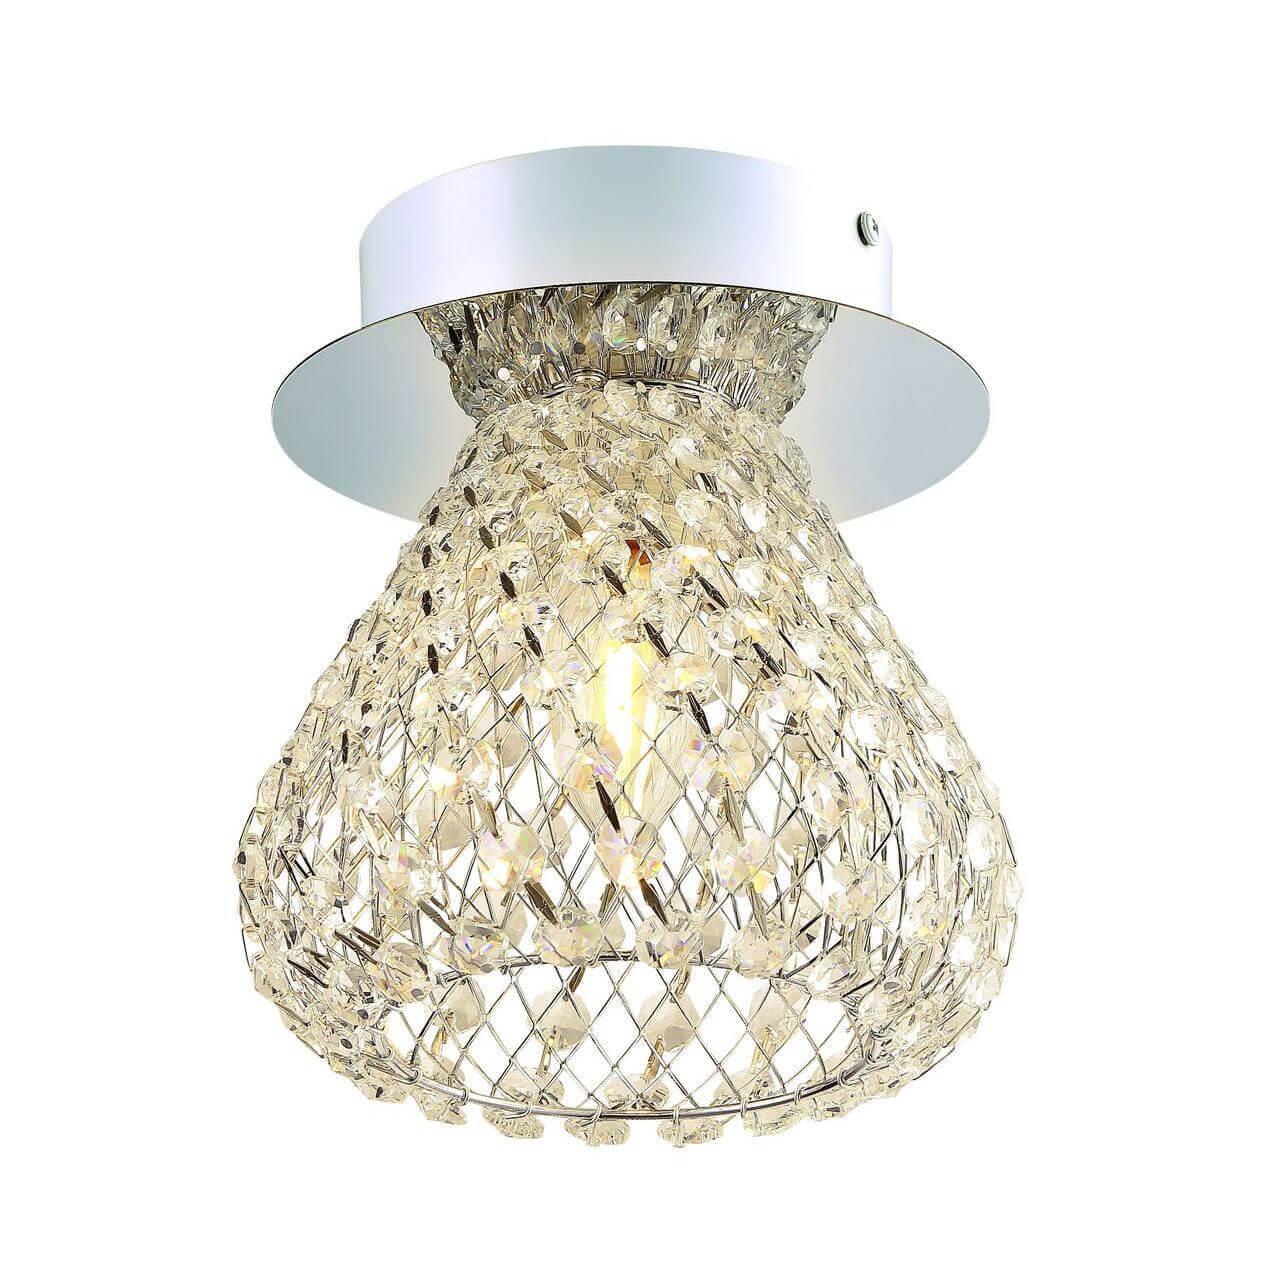 Потолочный светильник Arte Lamp Adamello A9466PL-1CC